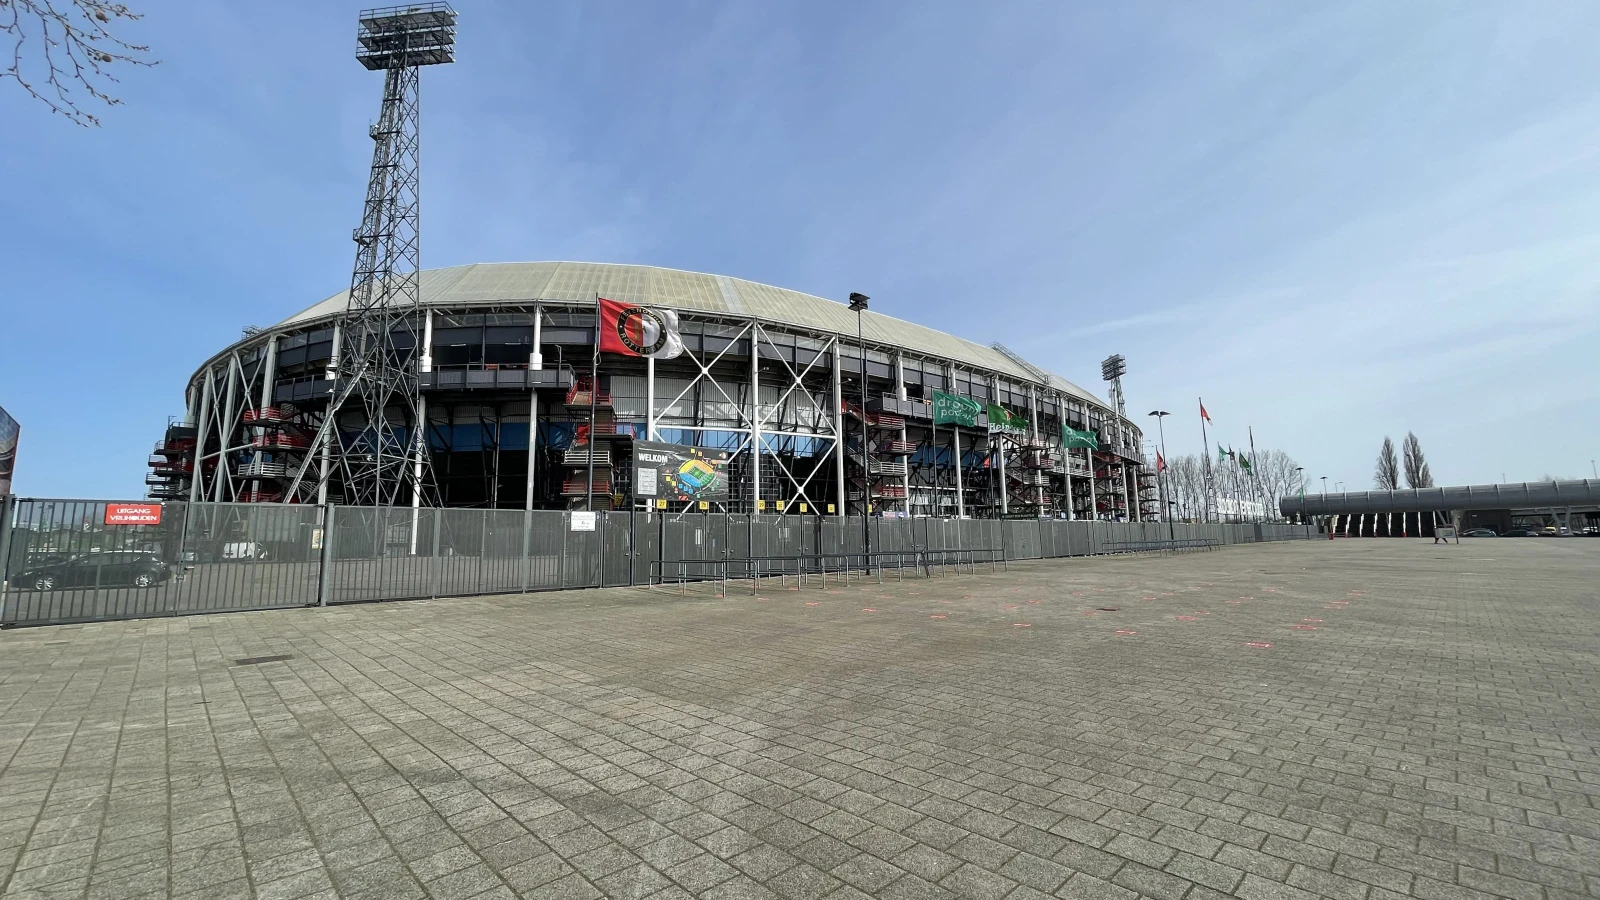 HUURLINGEN | Huurlingen komen niet in actie tijdens kwartfinales TOTO KNVB Beker